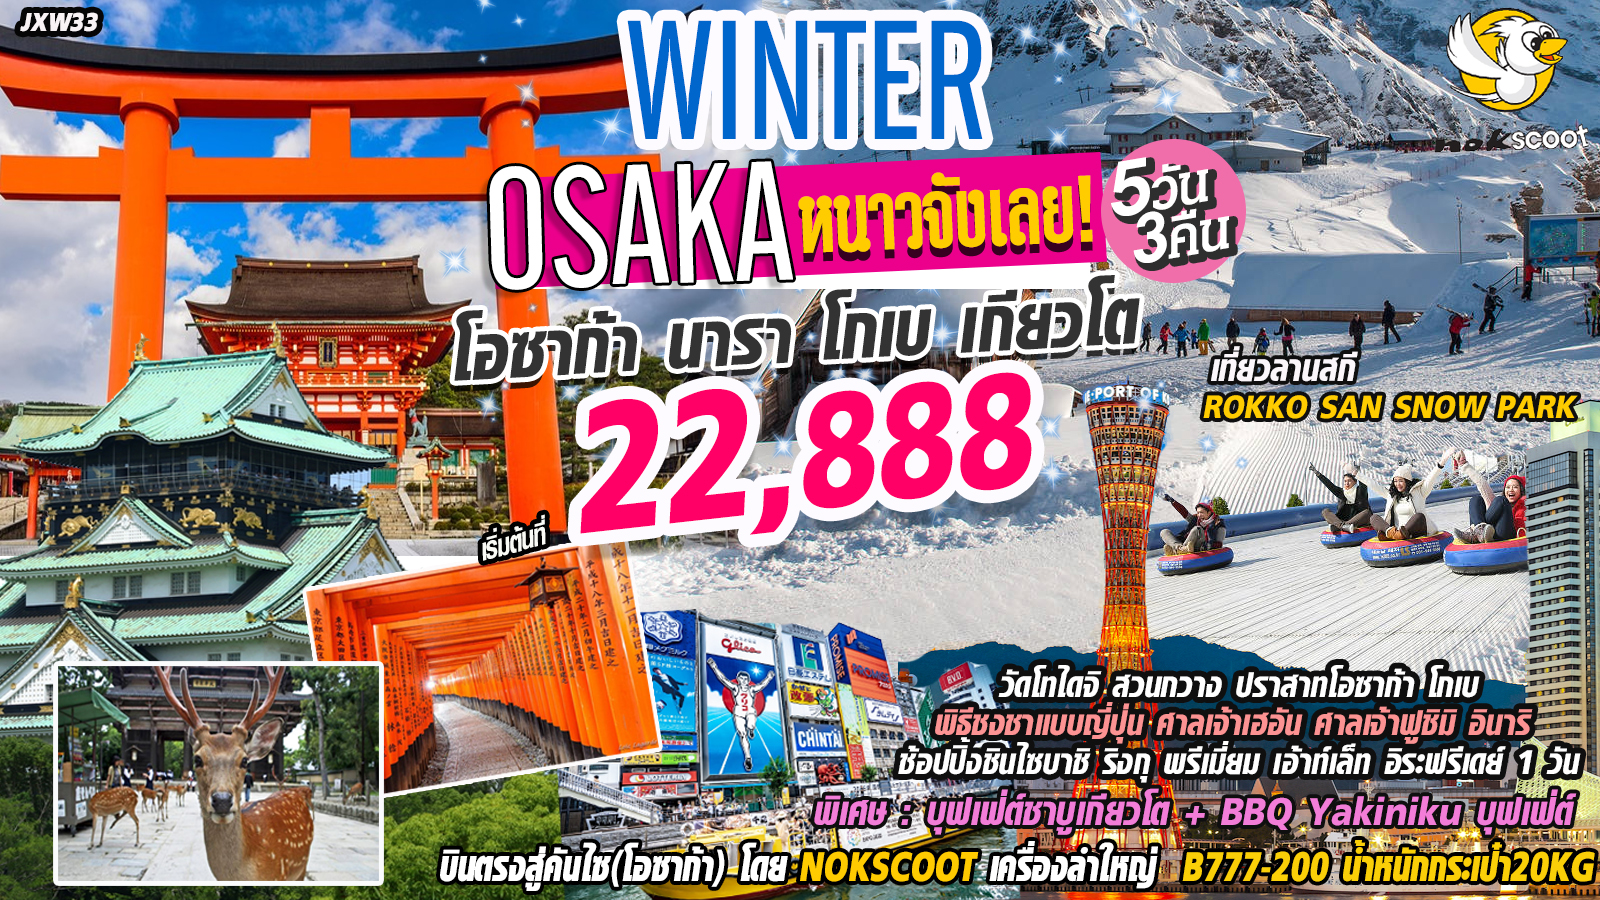 ทัวร์ญี่ปุ่น หนาวจังเลย! โอซาก้า Osaka Nara Kyoto Kobe Ski Winter 5D 3N (Dec-Mar 20)(JXW33)